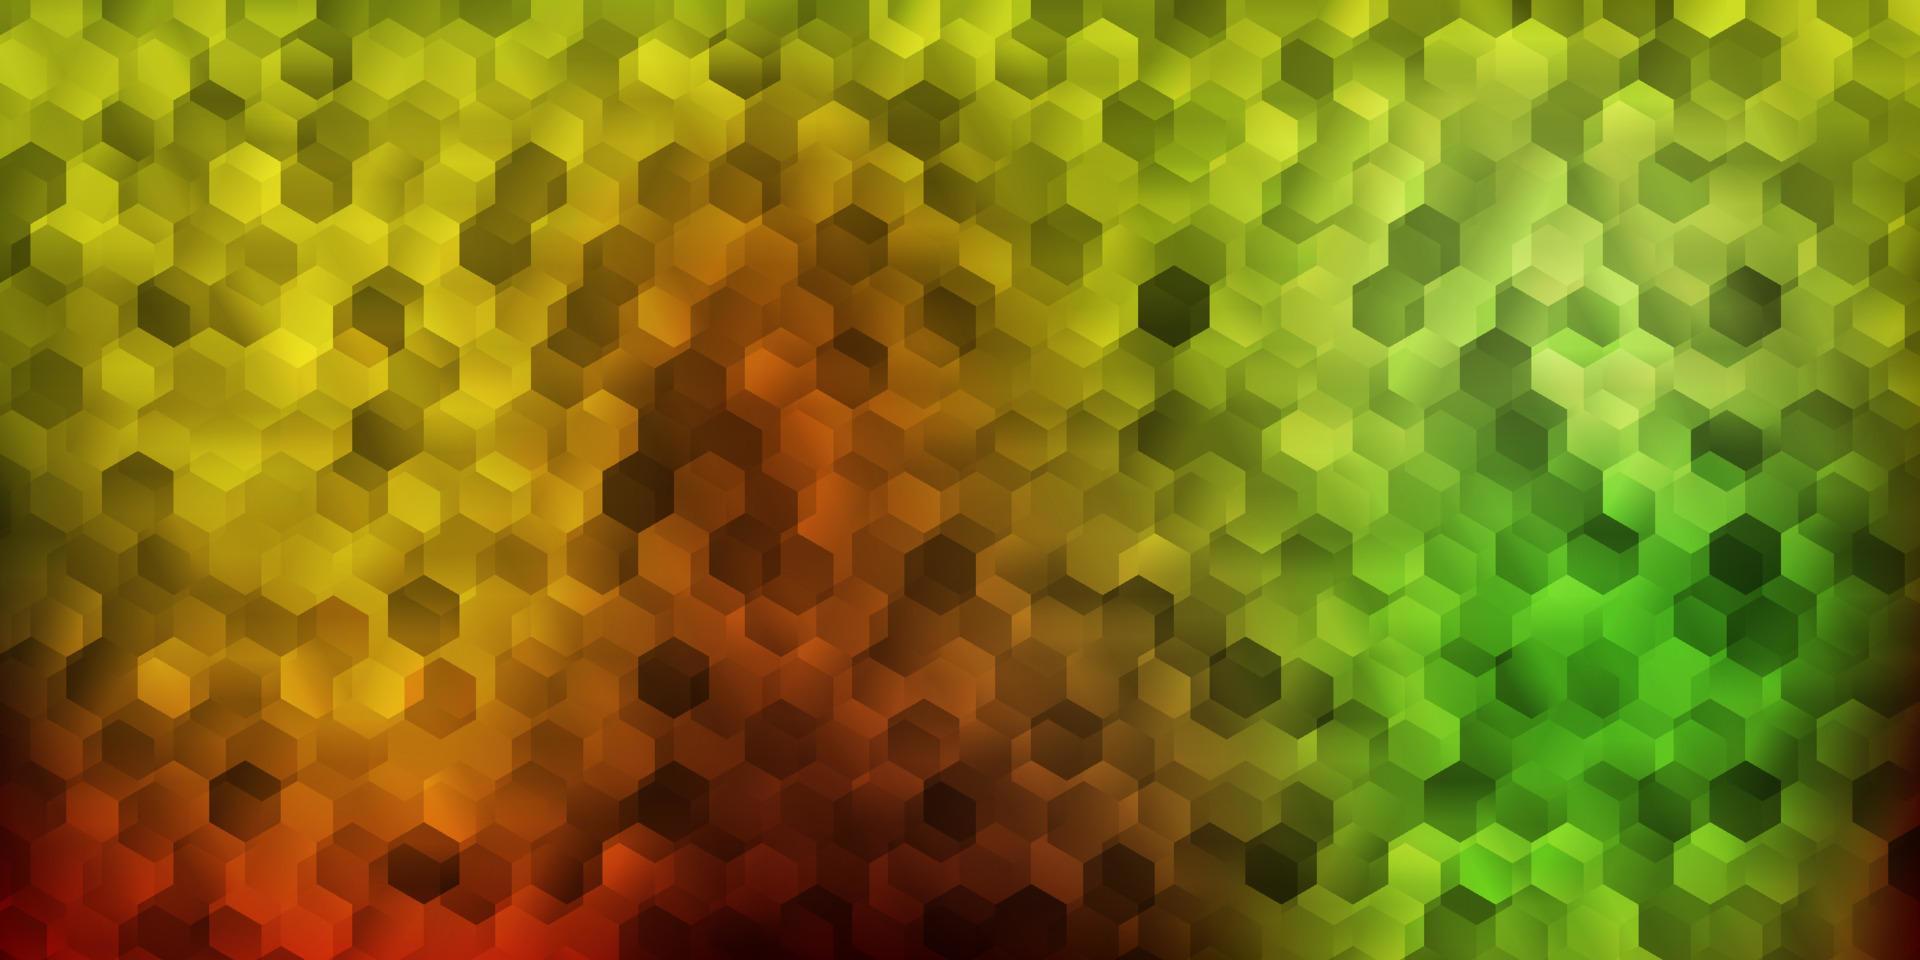 modèle vectoriel vert clair, jaune dans un style hexagonal.